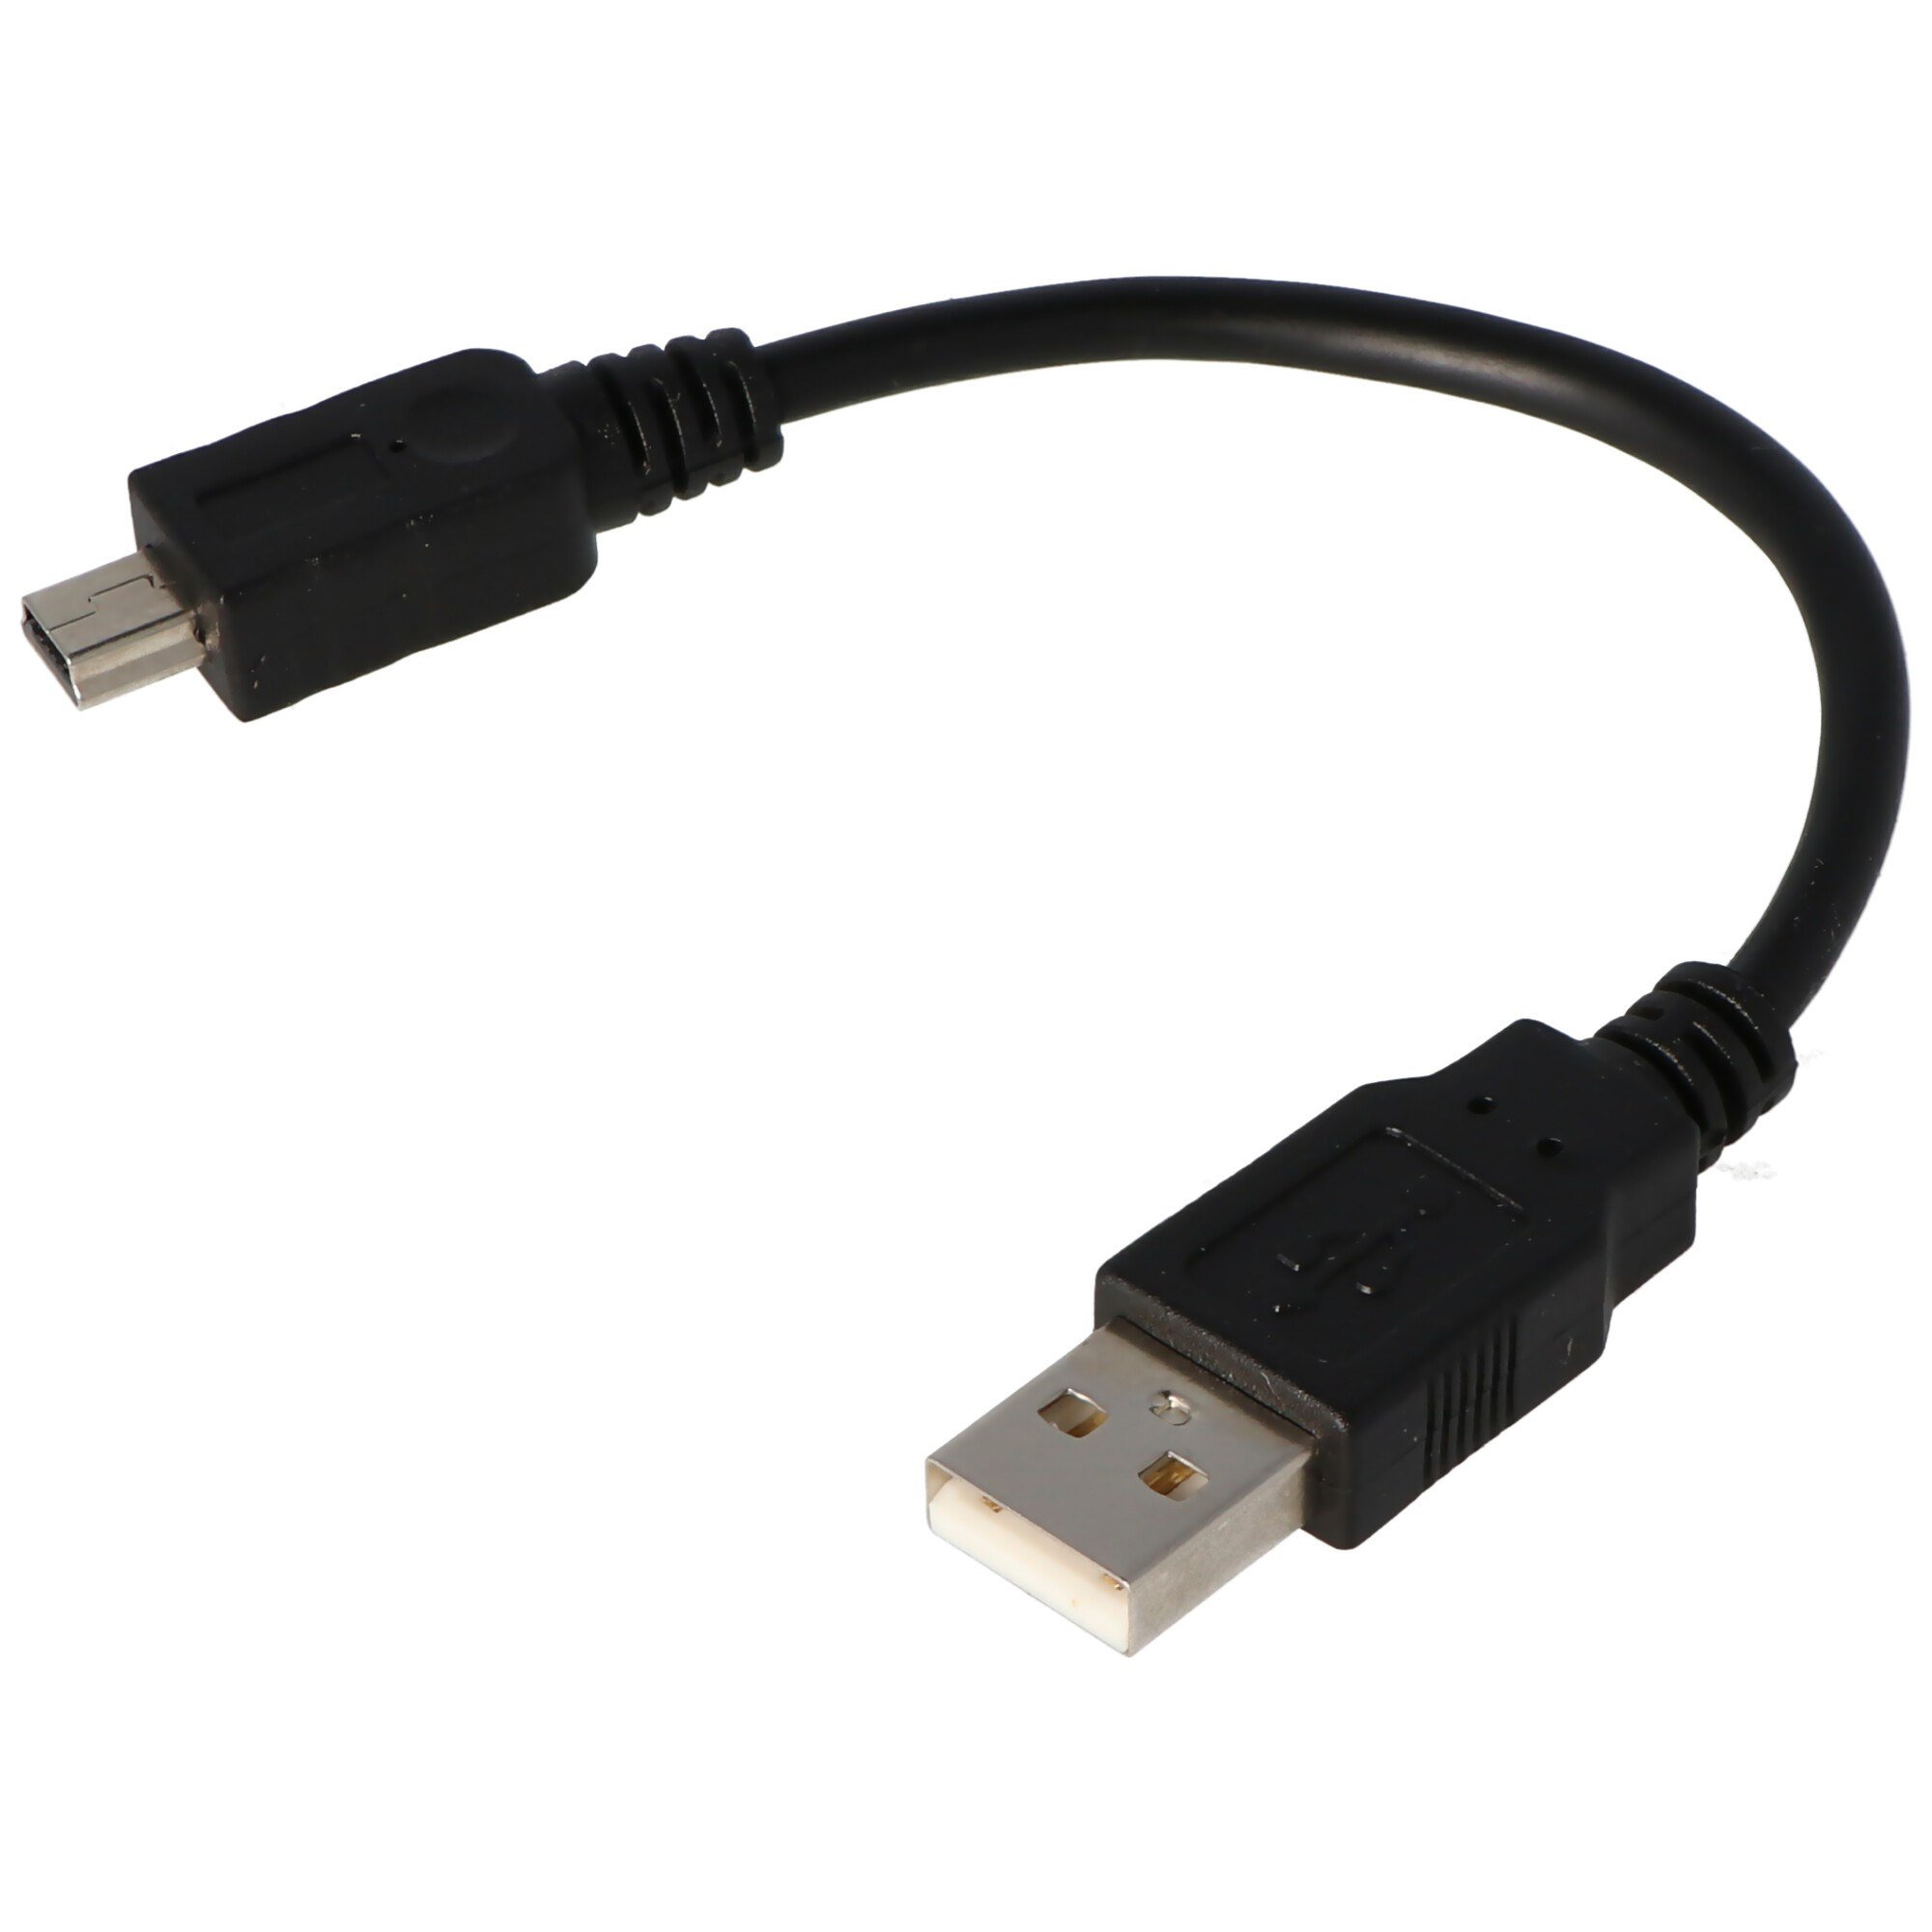 USB 2.0 Yüksek Hızlı kablo A erkek B mini erkek 5 pin